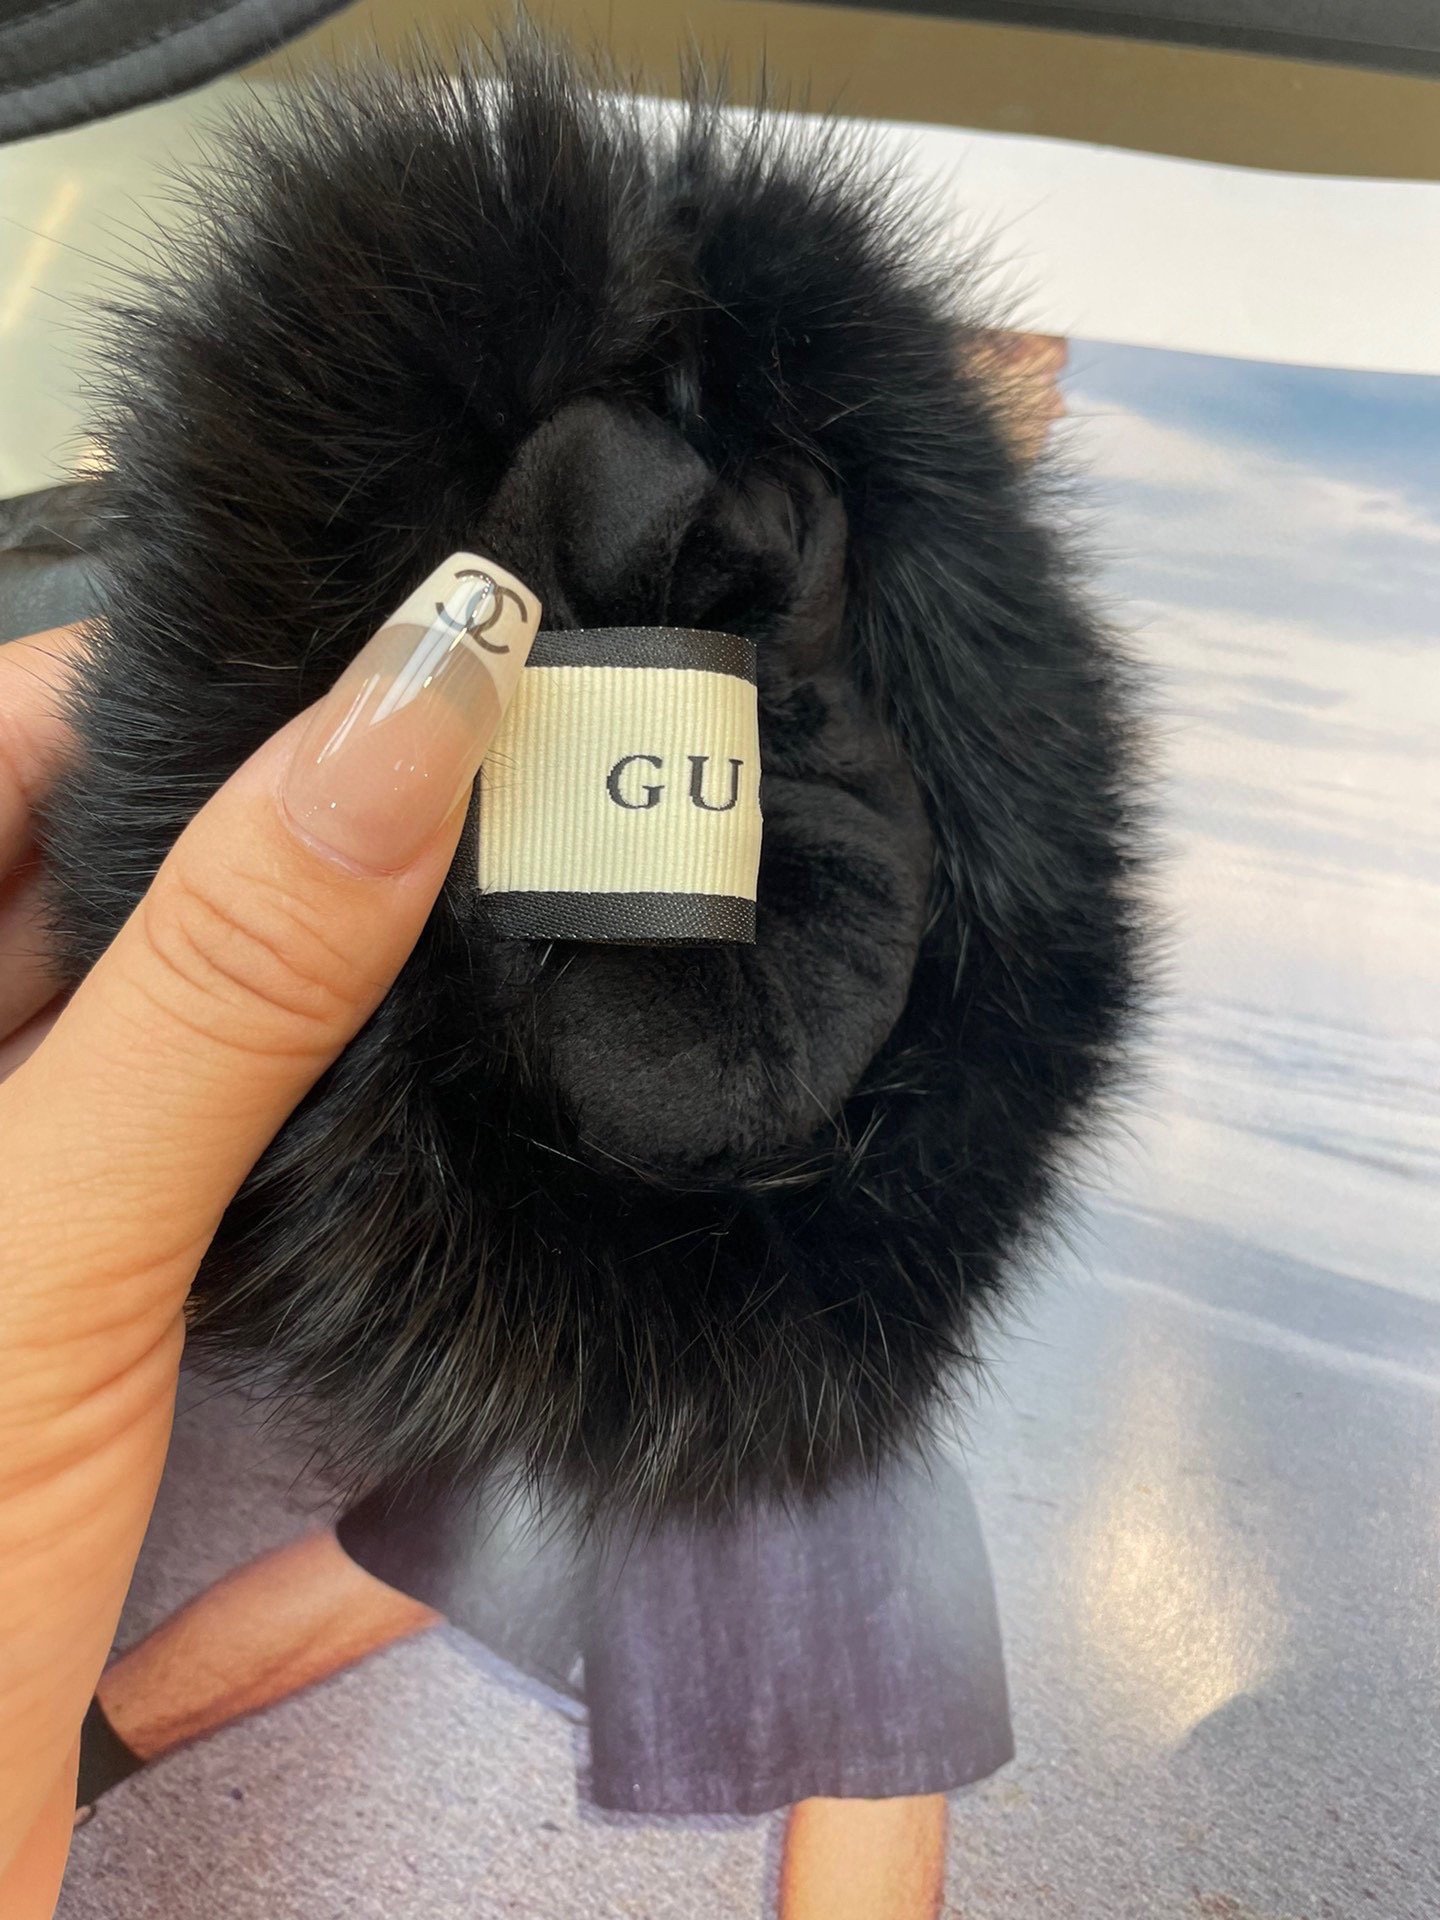 Gucci新款女士手套一级羊皮皮质超薄保暖舒适柔软舒适特显手型质感超群码数均码